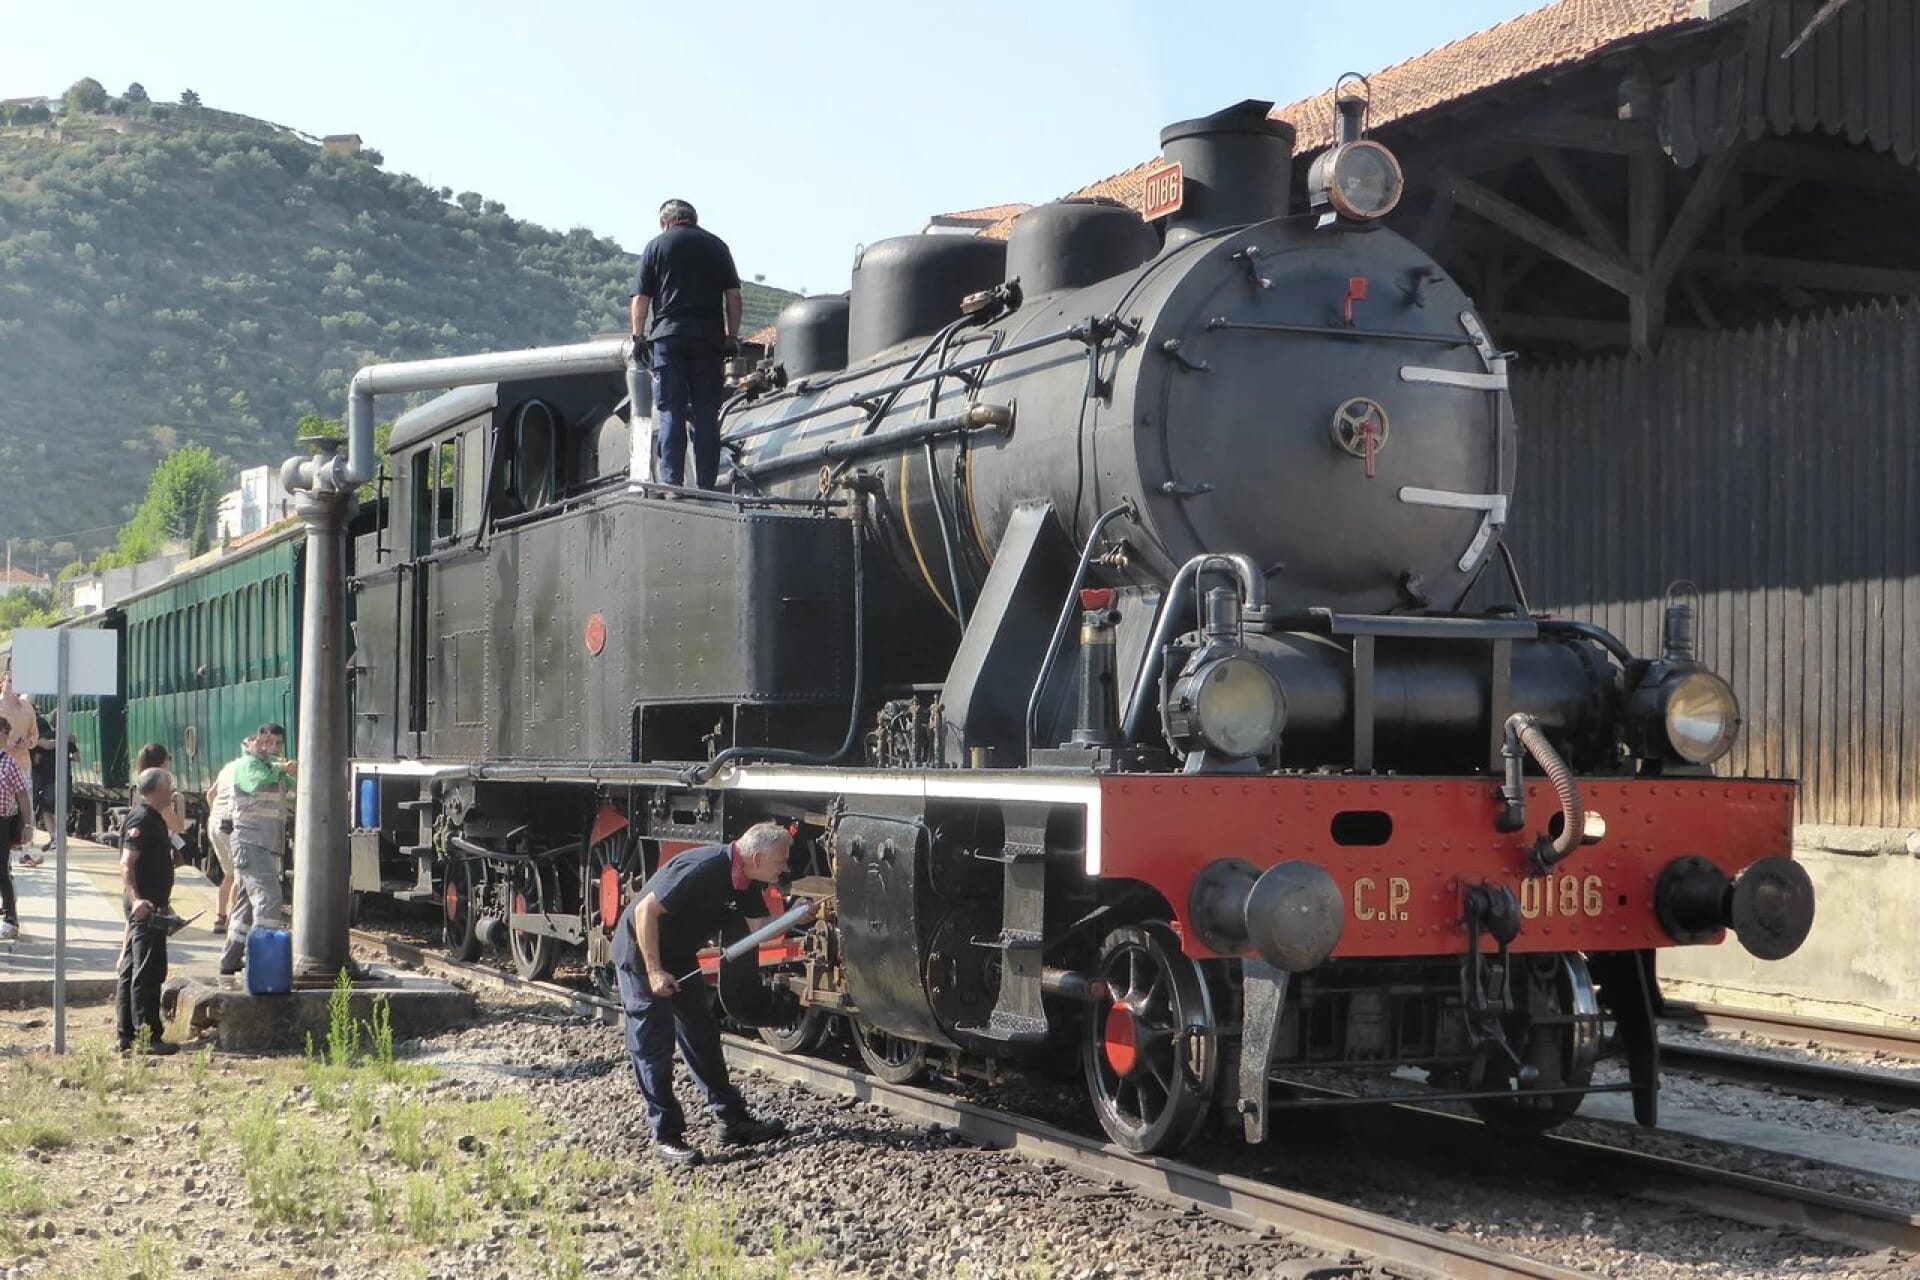 Comboio Histórico do Douro: Uma Viagem Inesquecível no Tempo e na Cultura Portuguesa